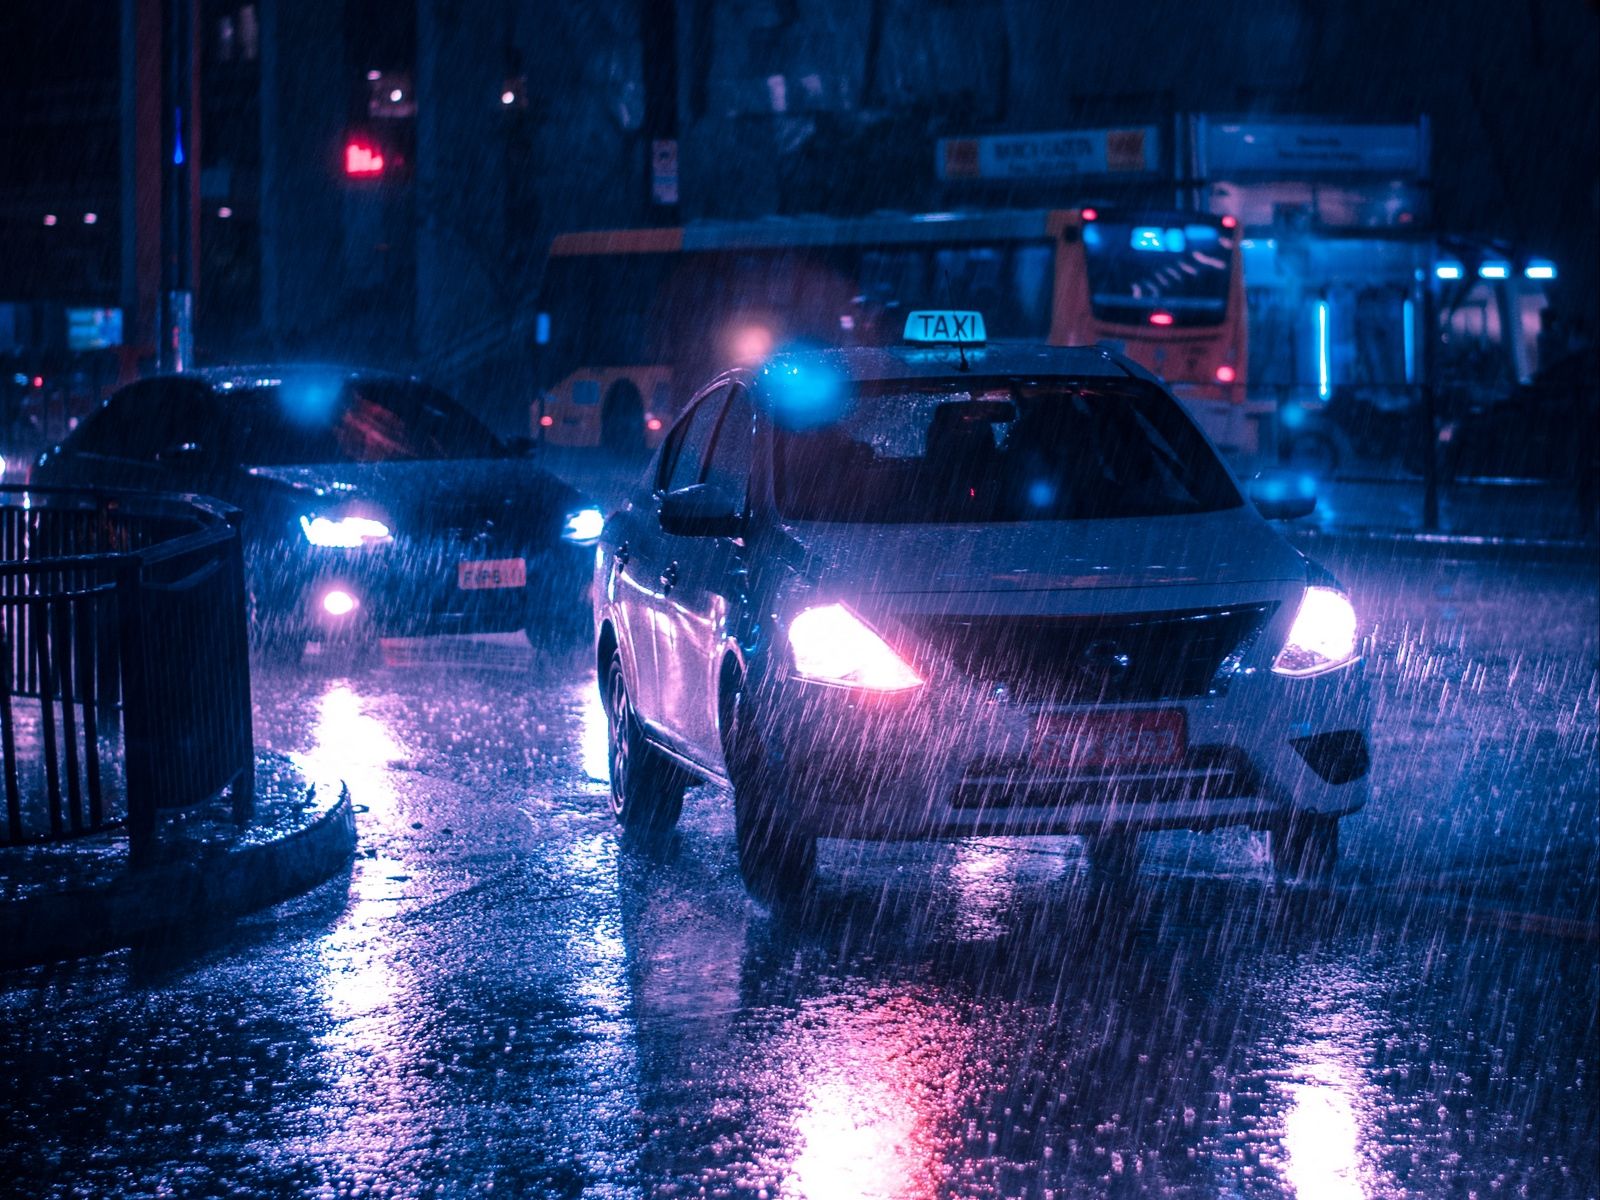 Download wallpaper 1600x1200 taxi, car, rain, night city, street